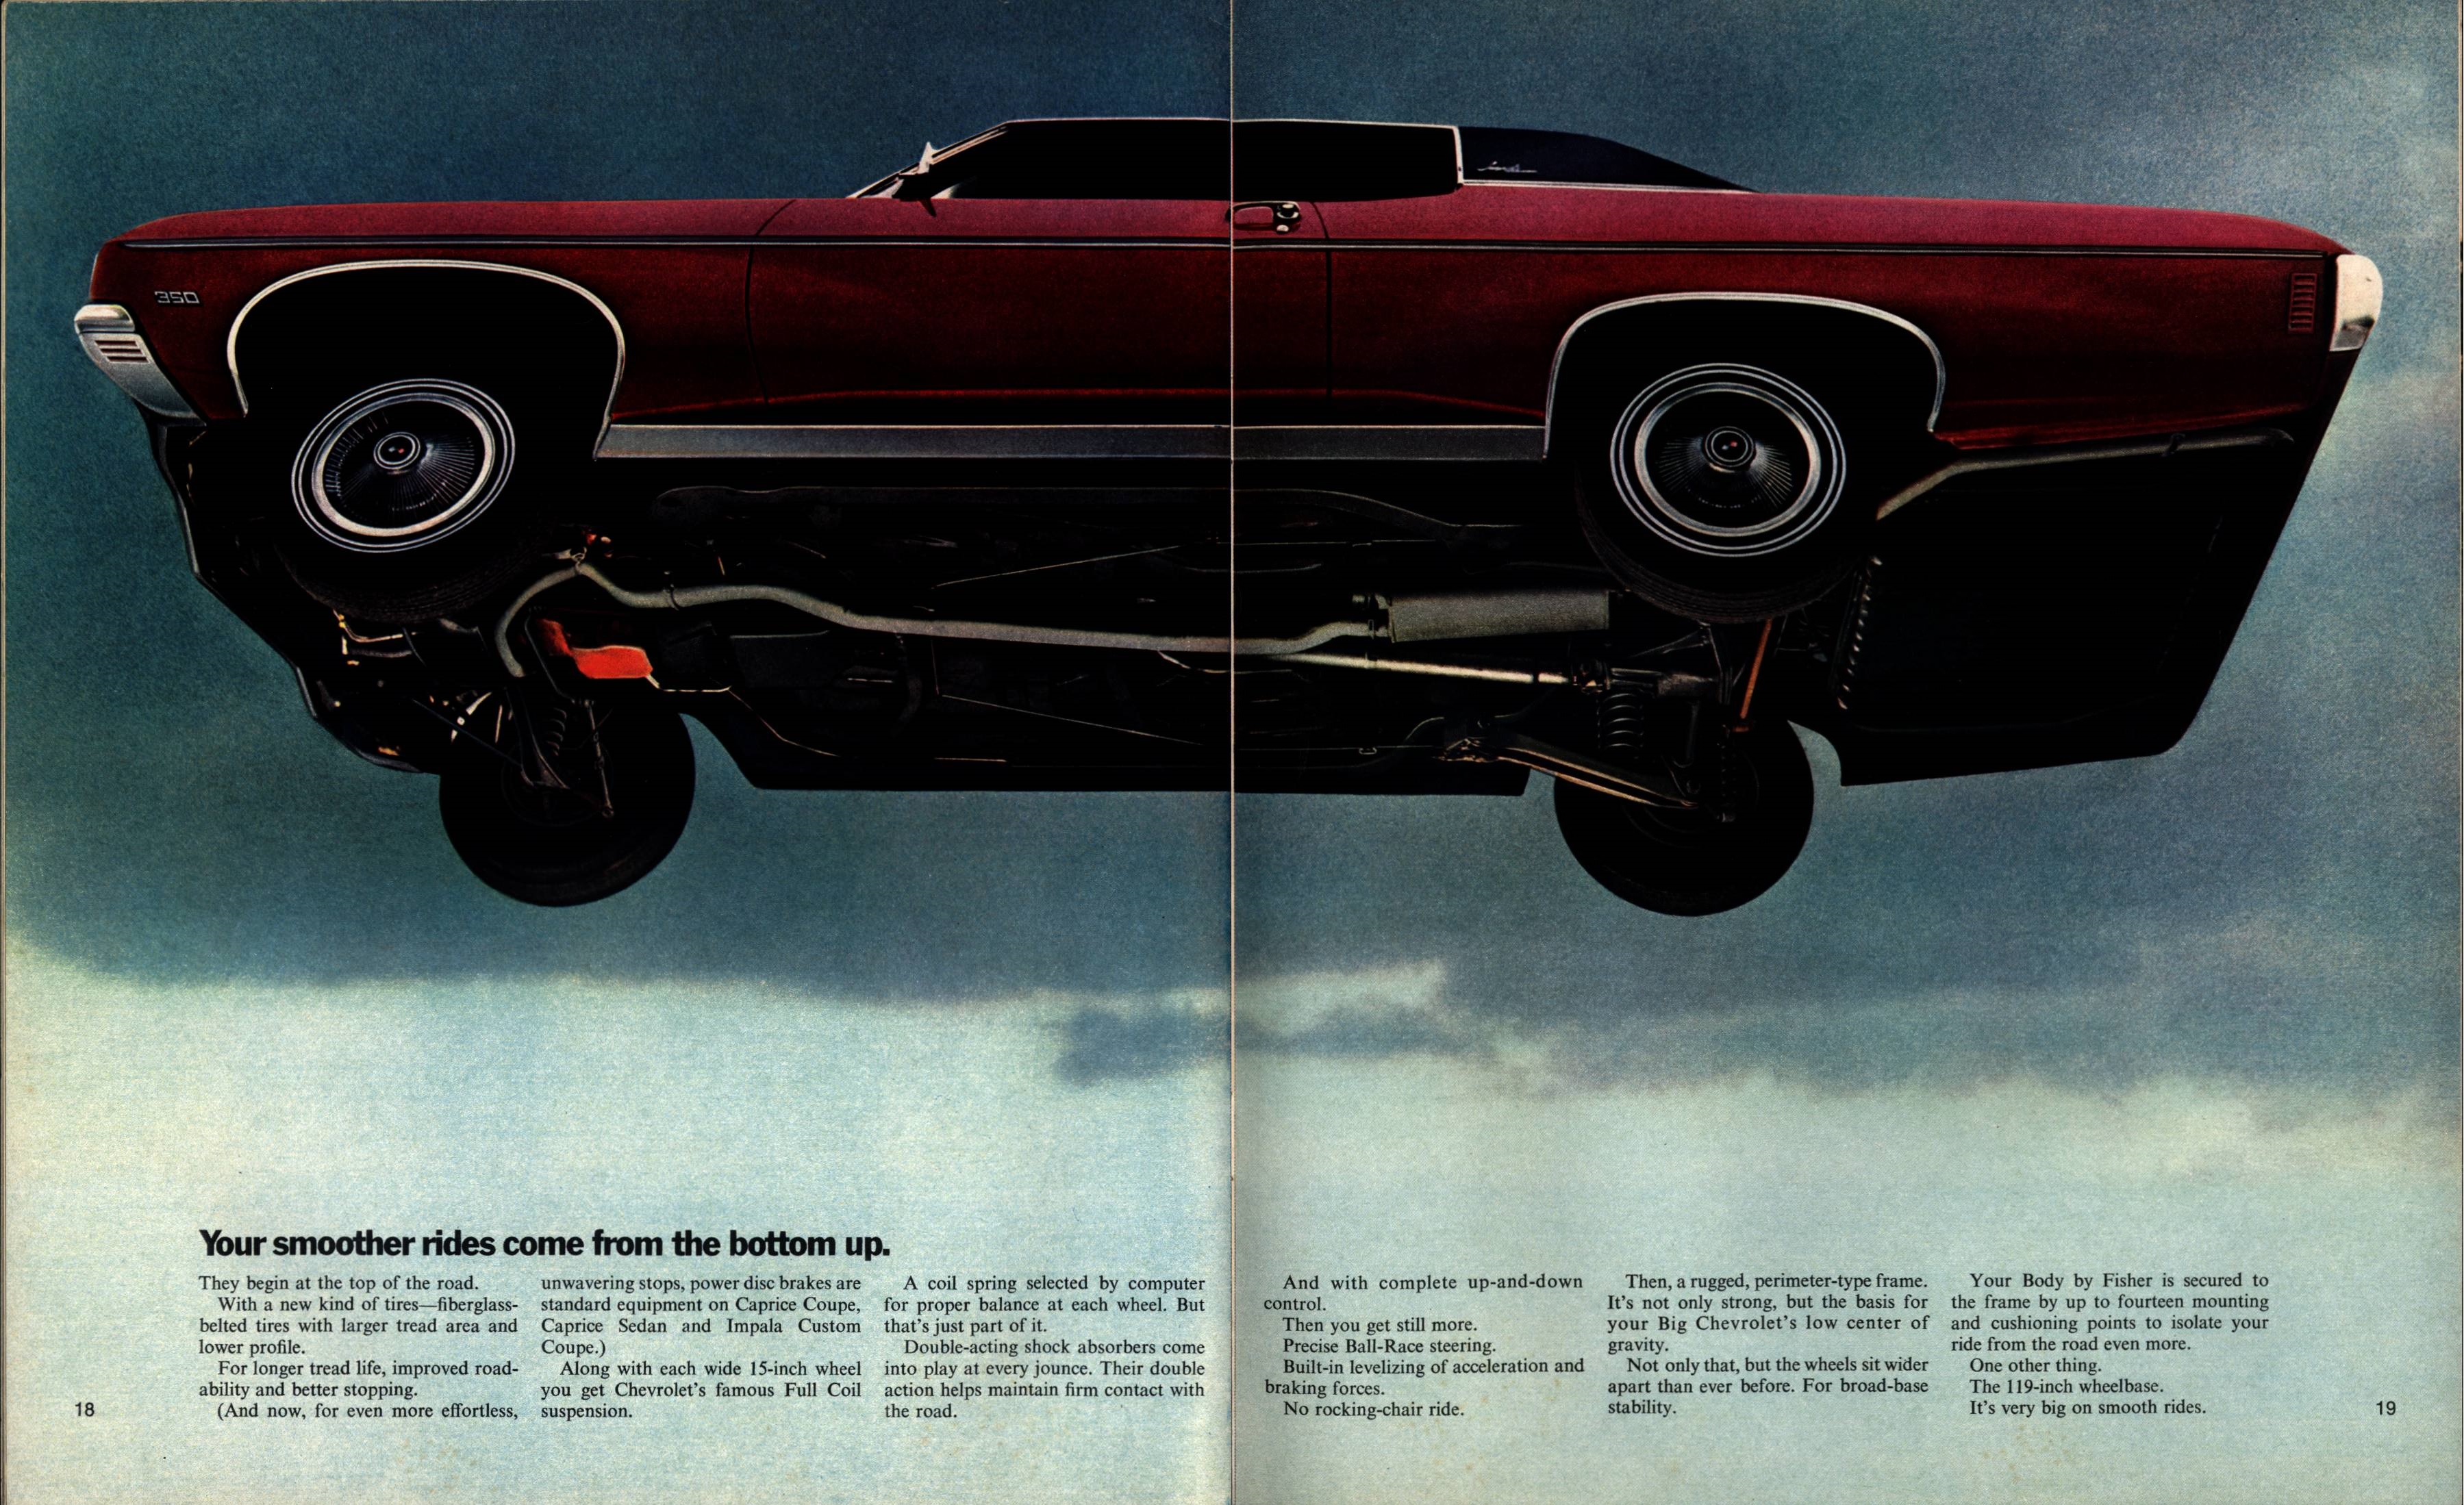 1970 Chevrolet Full Size Brochure 18-19